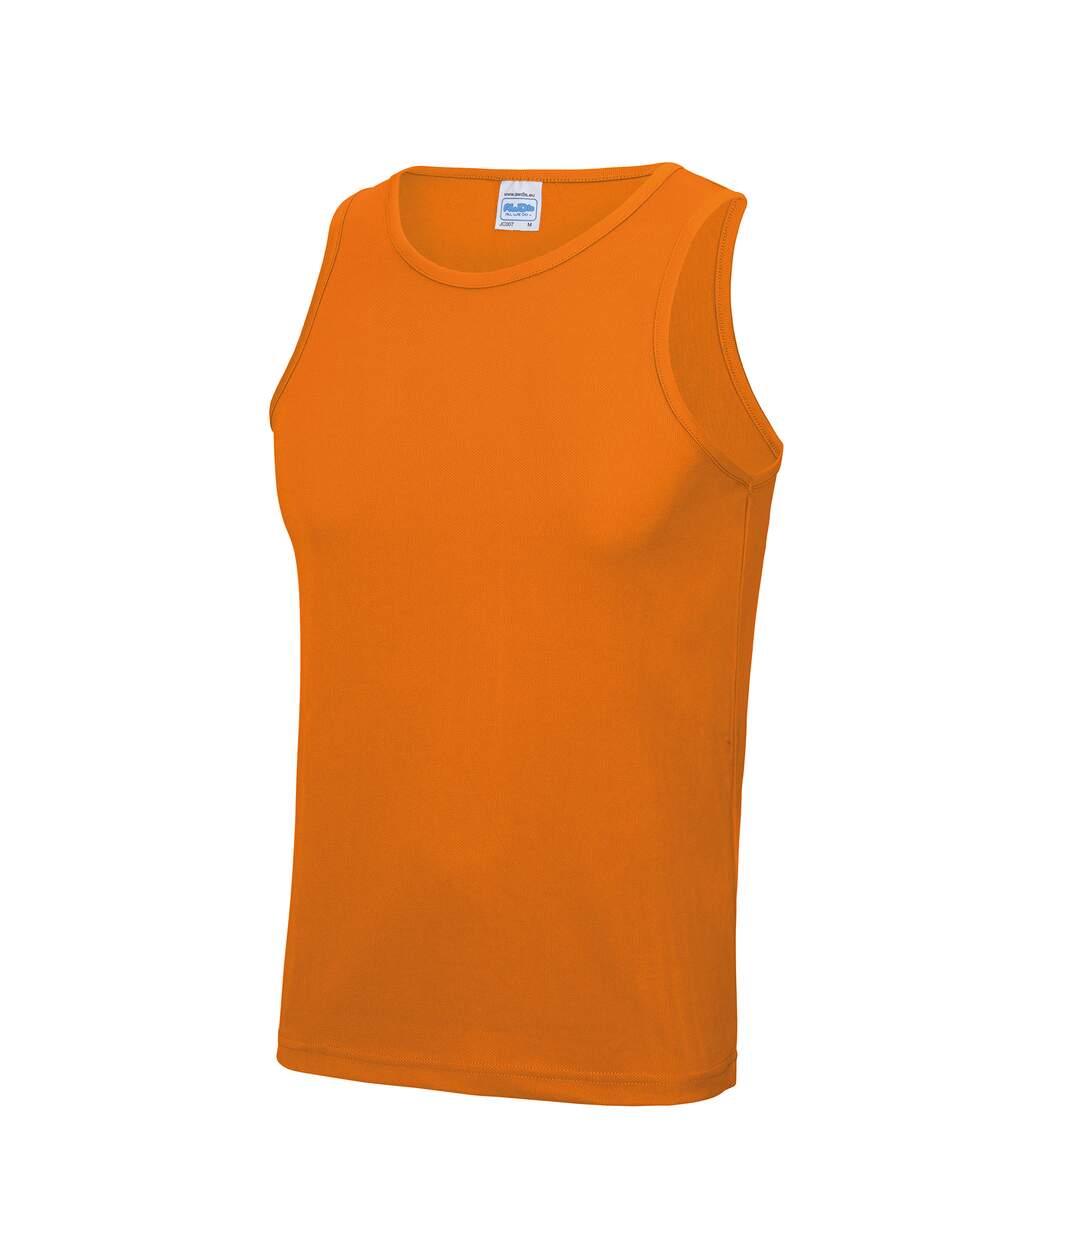 Débardeur sport uni Just Cool - Homme (Orange) - UTRW687